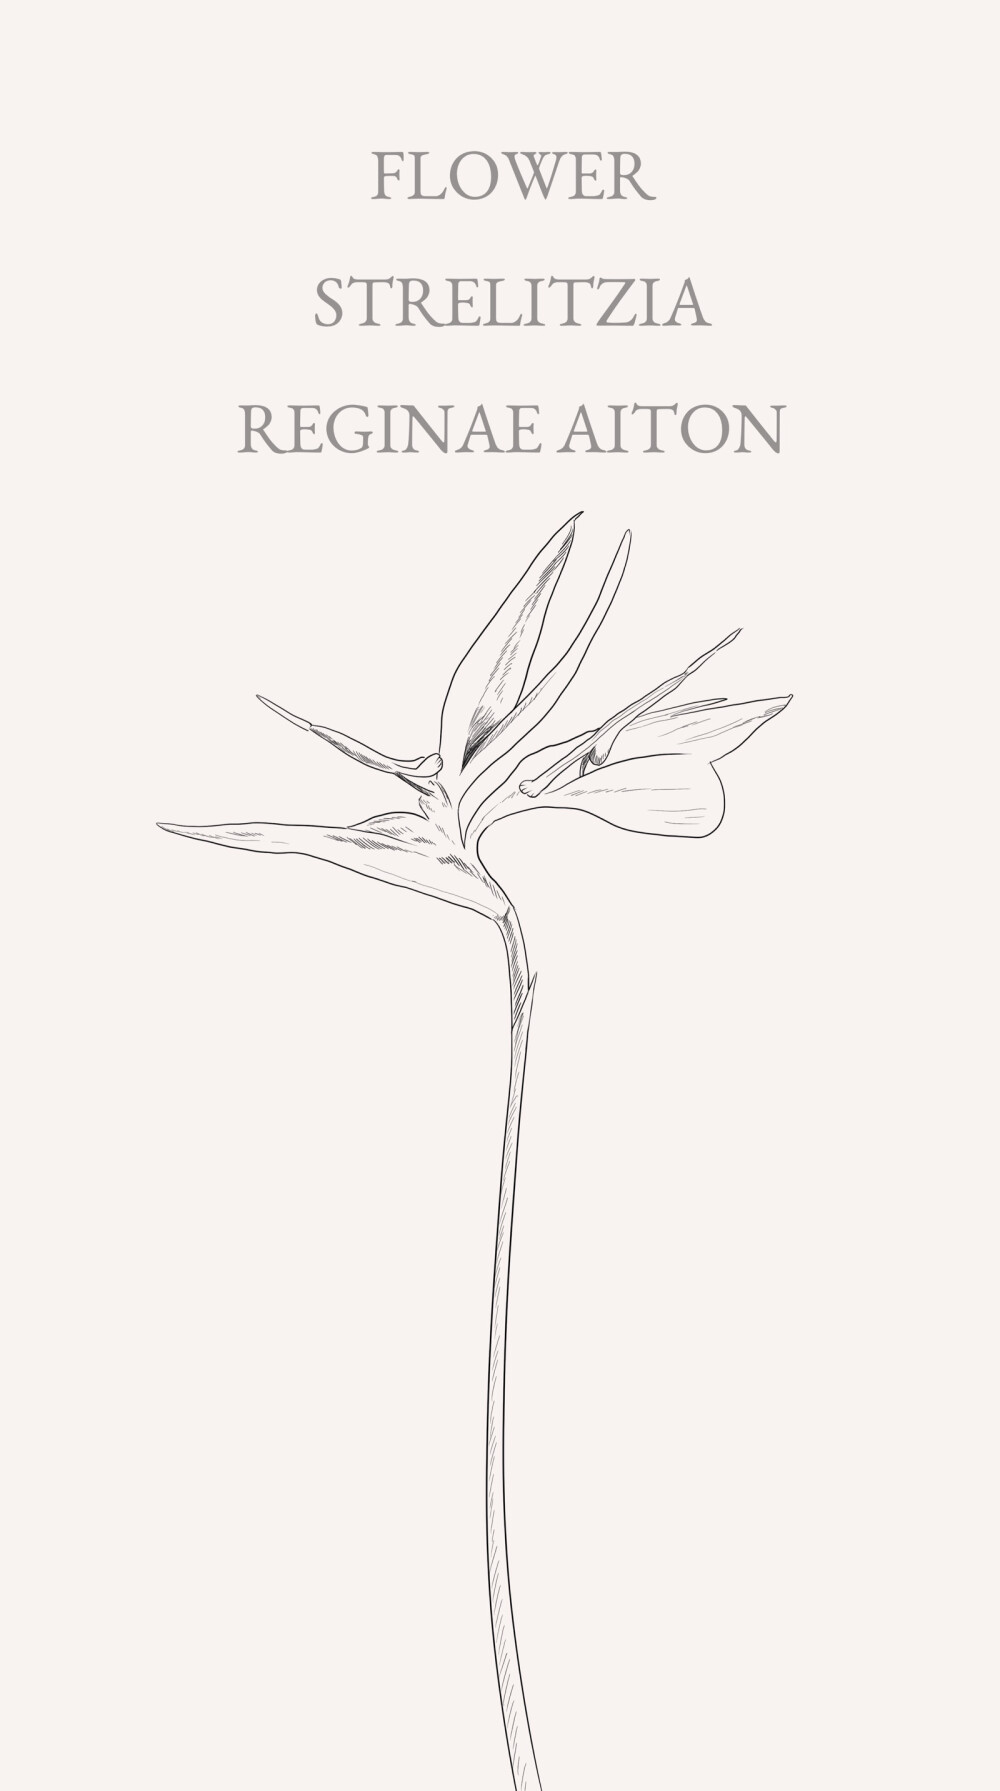 鹤望兰(strelitzia reginae aiton)旅人蕉科多年生草本植物,无茎,也称